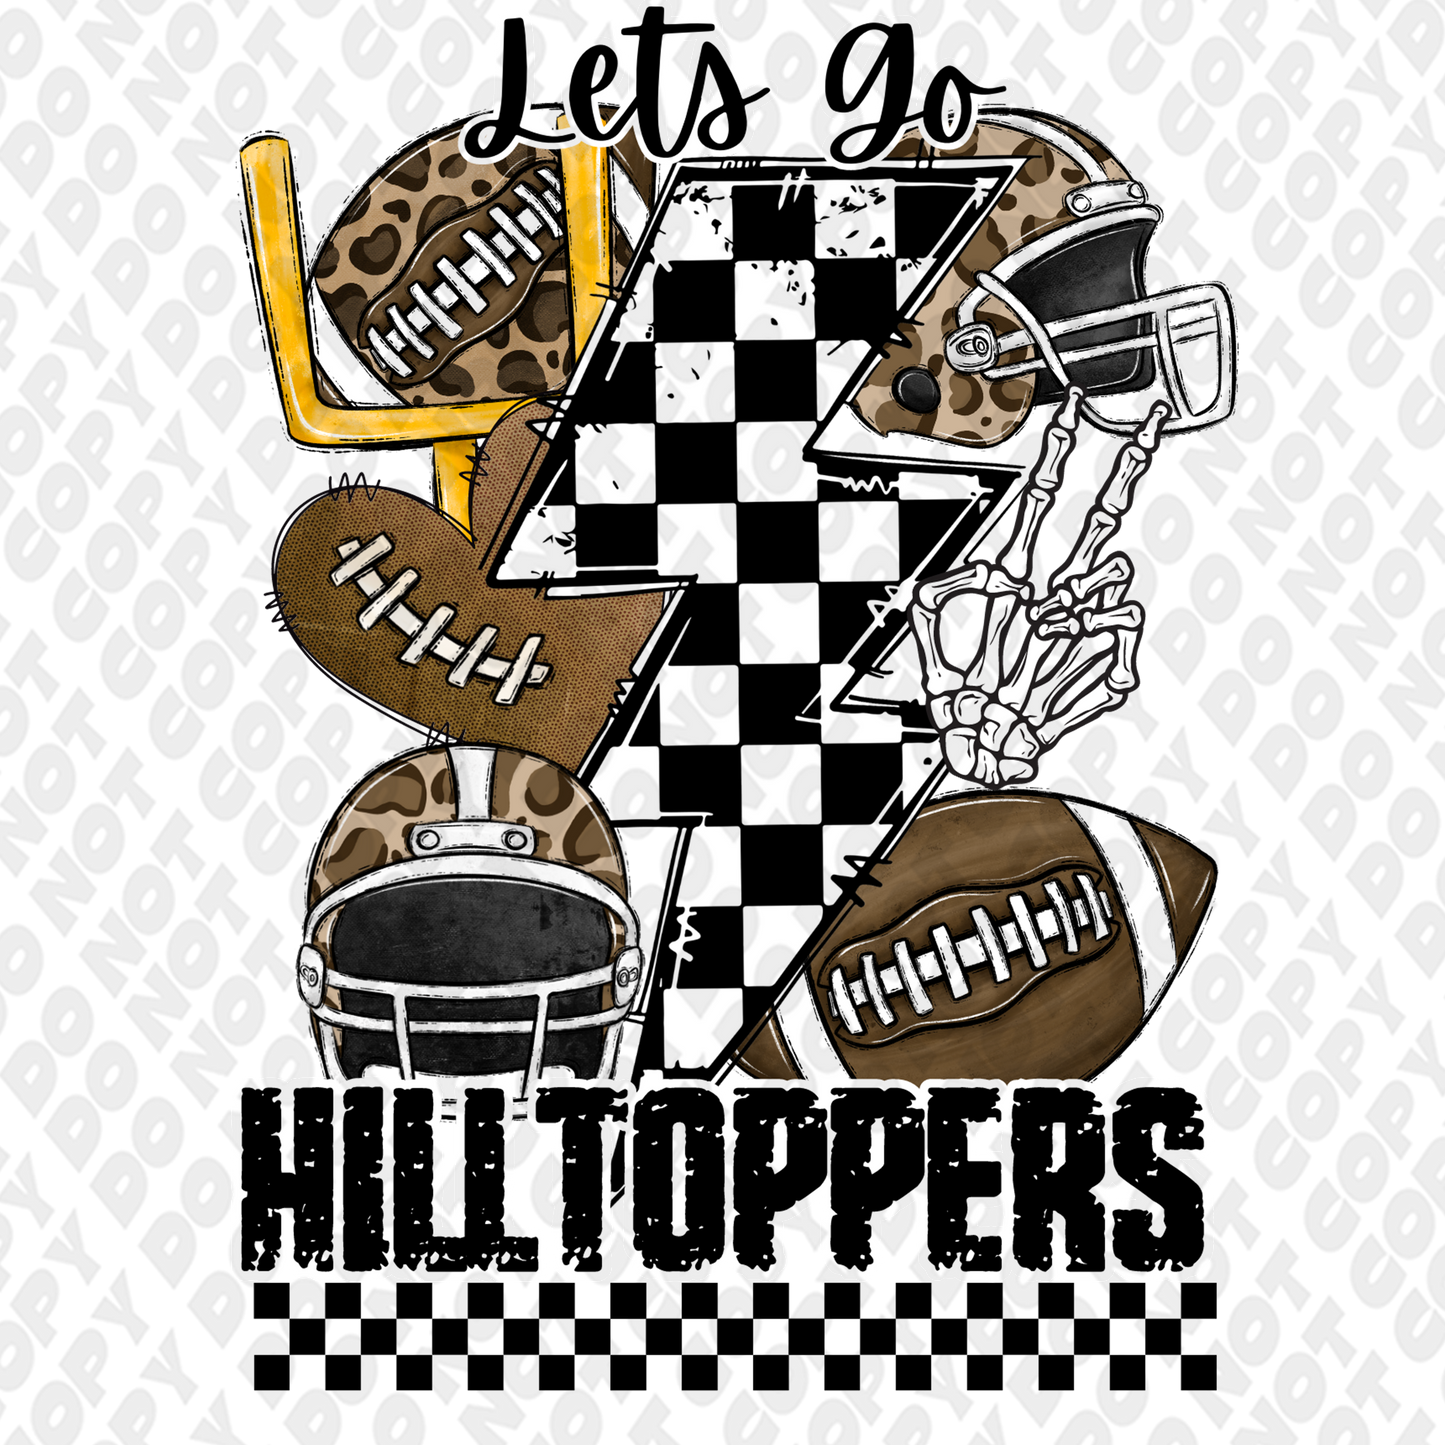 Let's go Hilltoppers